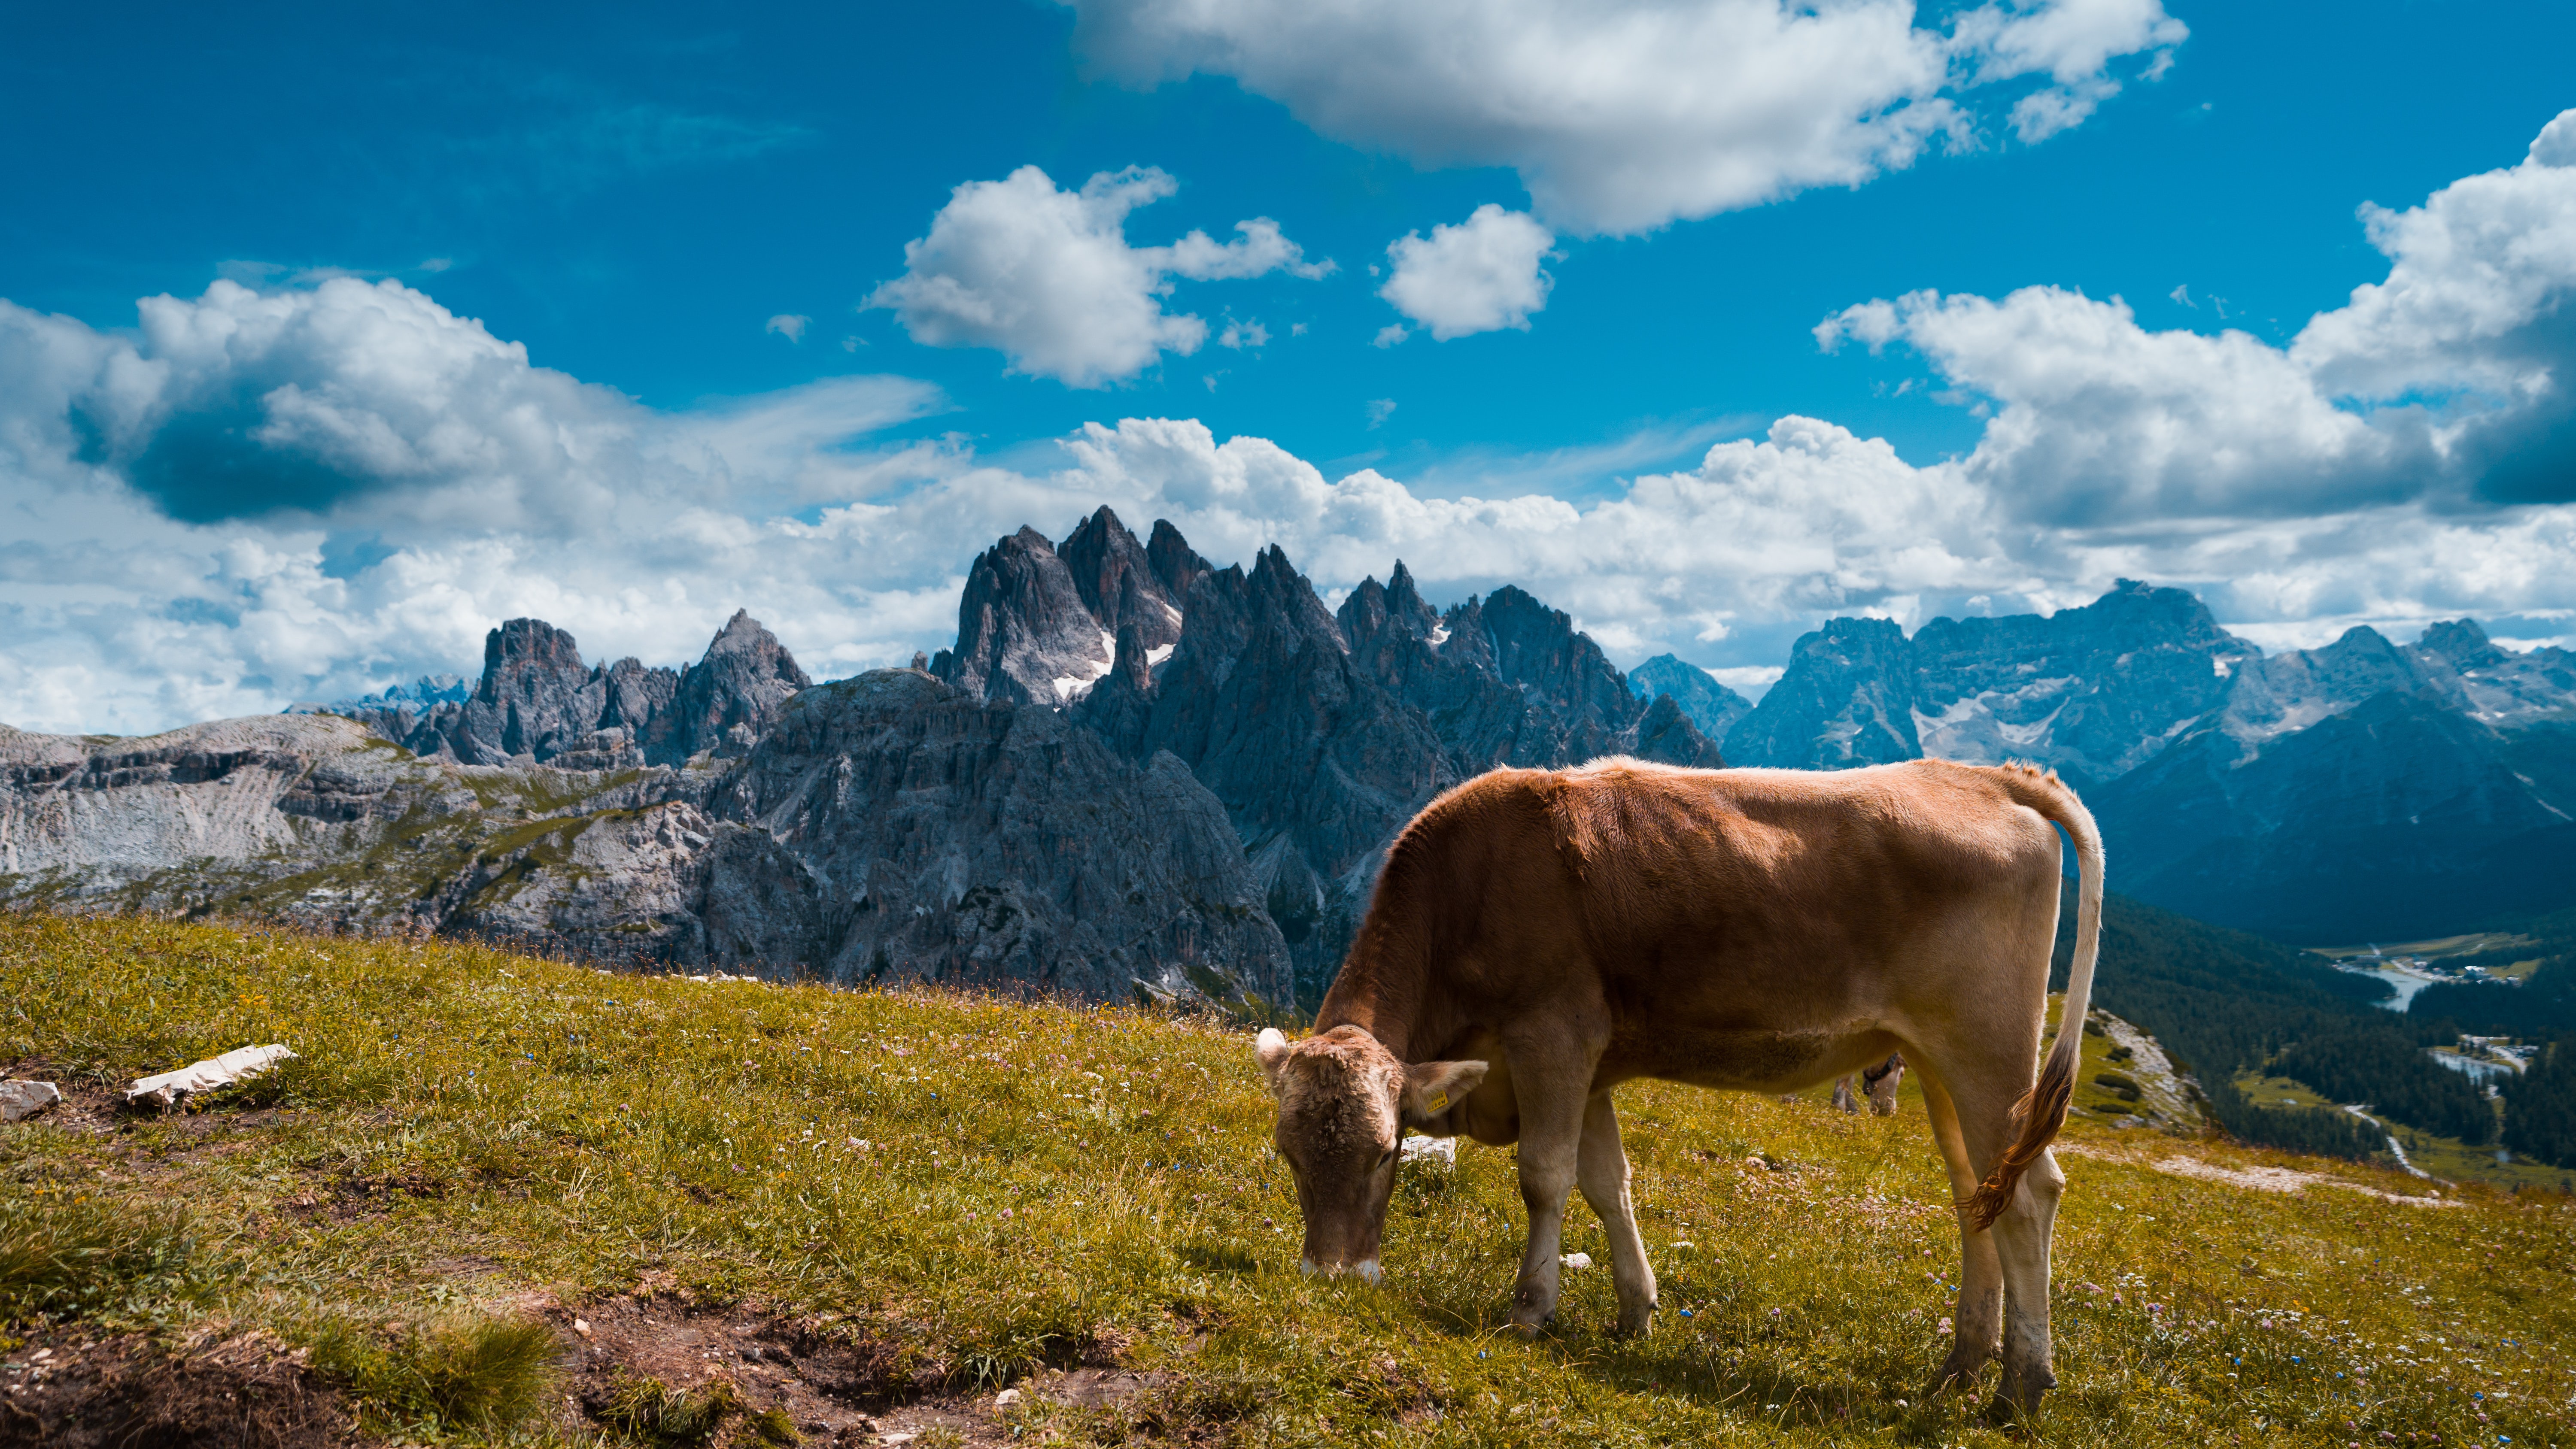 Скачать обои бесплатно Животные, Альпы, Корова картинка на рабочий стол ПК